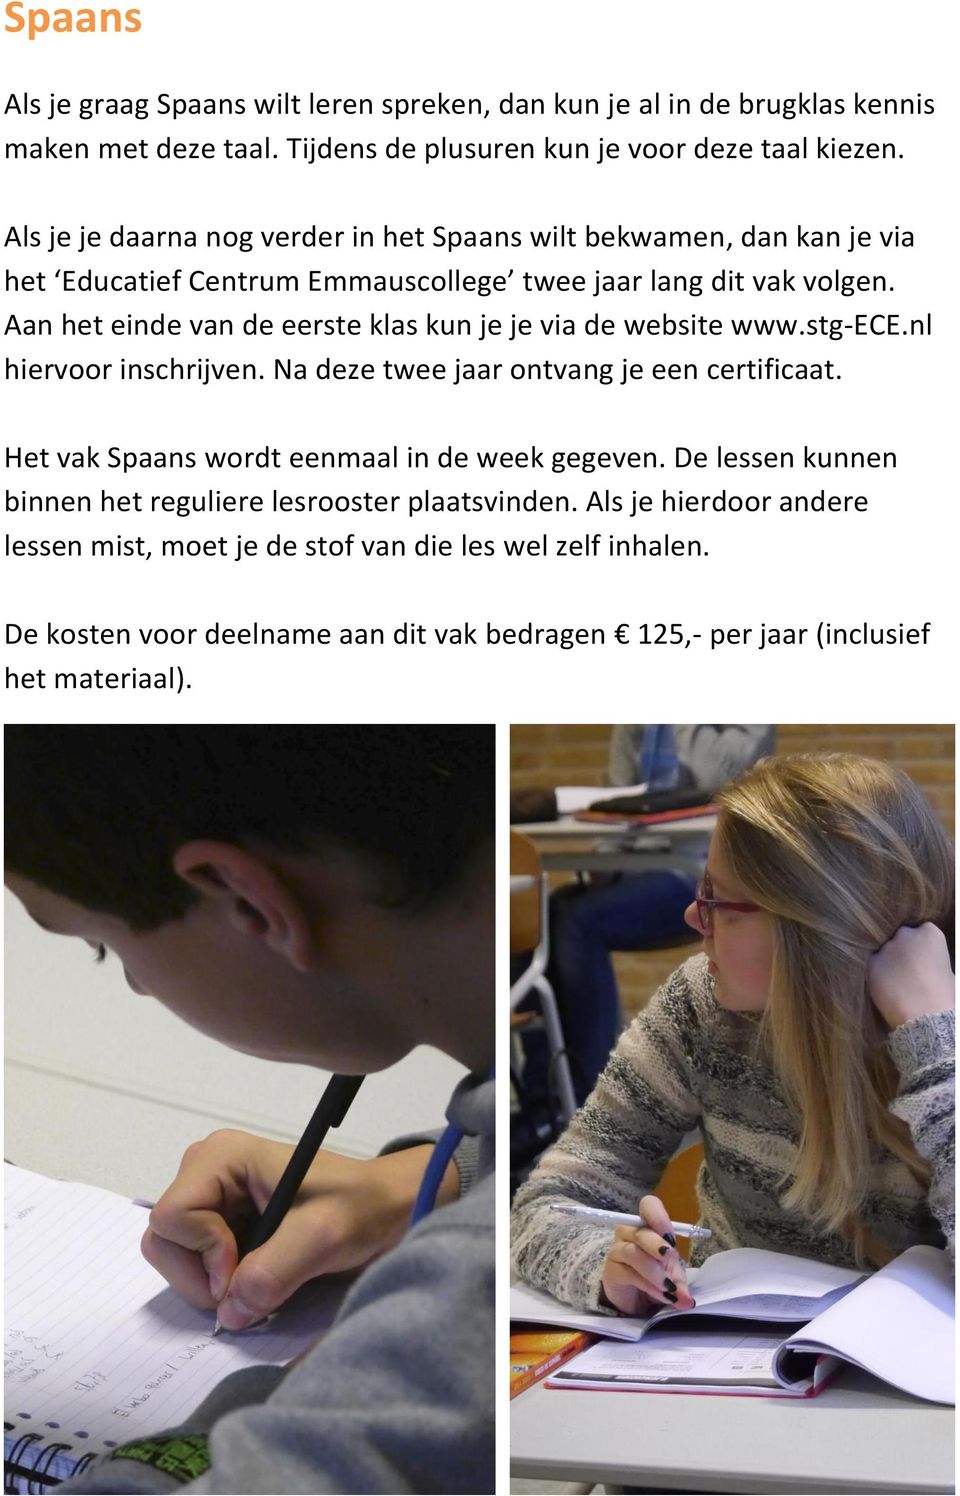 Aan het einde van de eerste klas kun je je via de website www.stg-ece.nl hiervoor inschrijven. Na deze twee jaar ontvang je een certificaat.